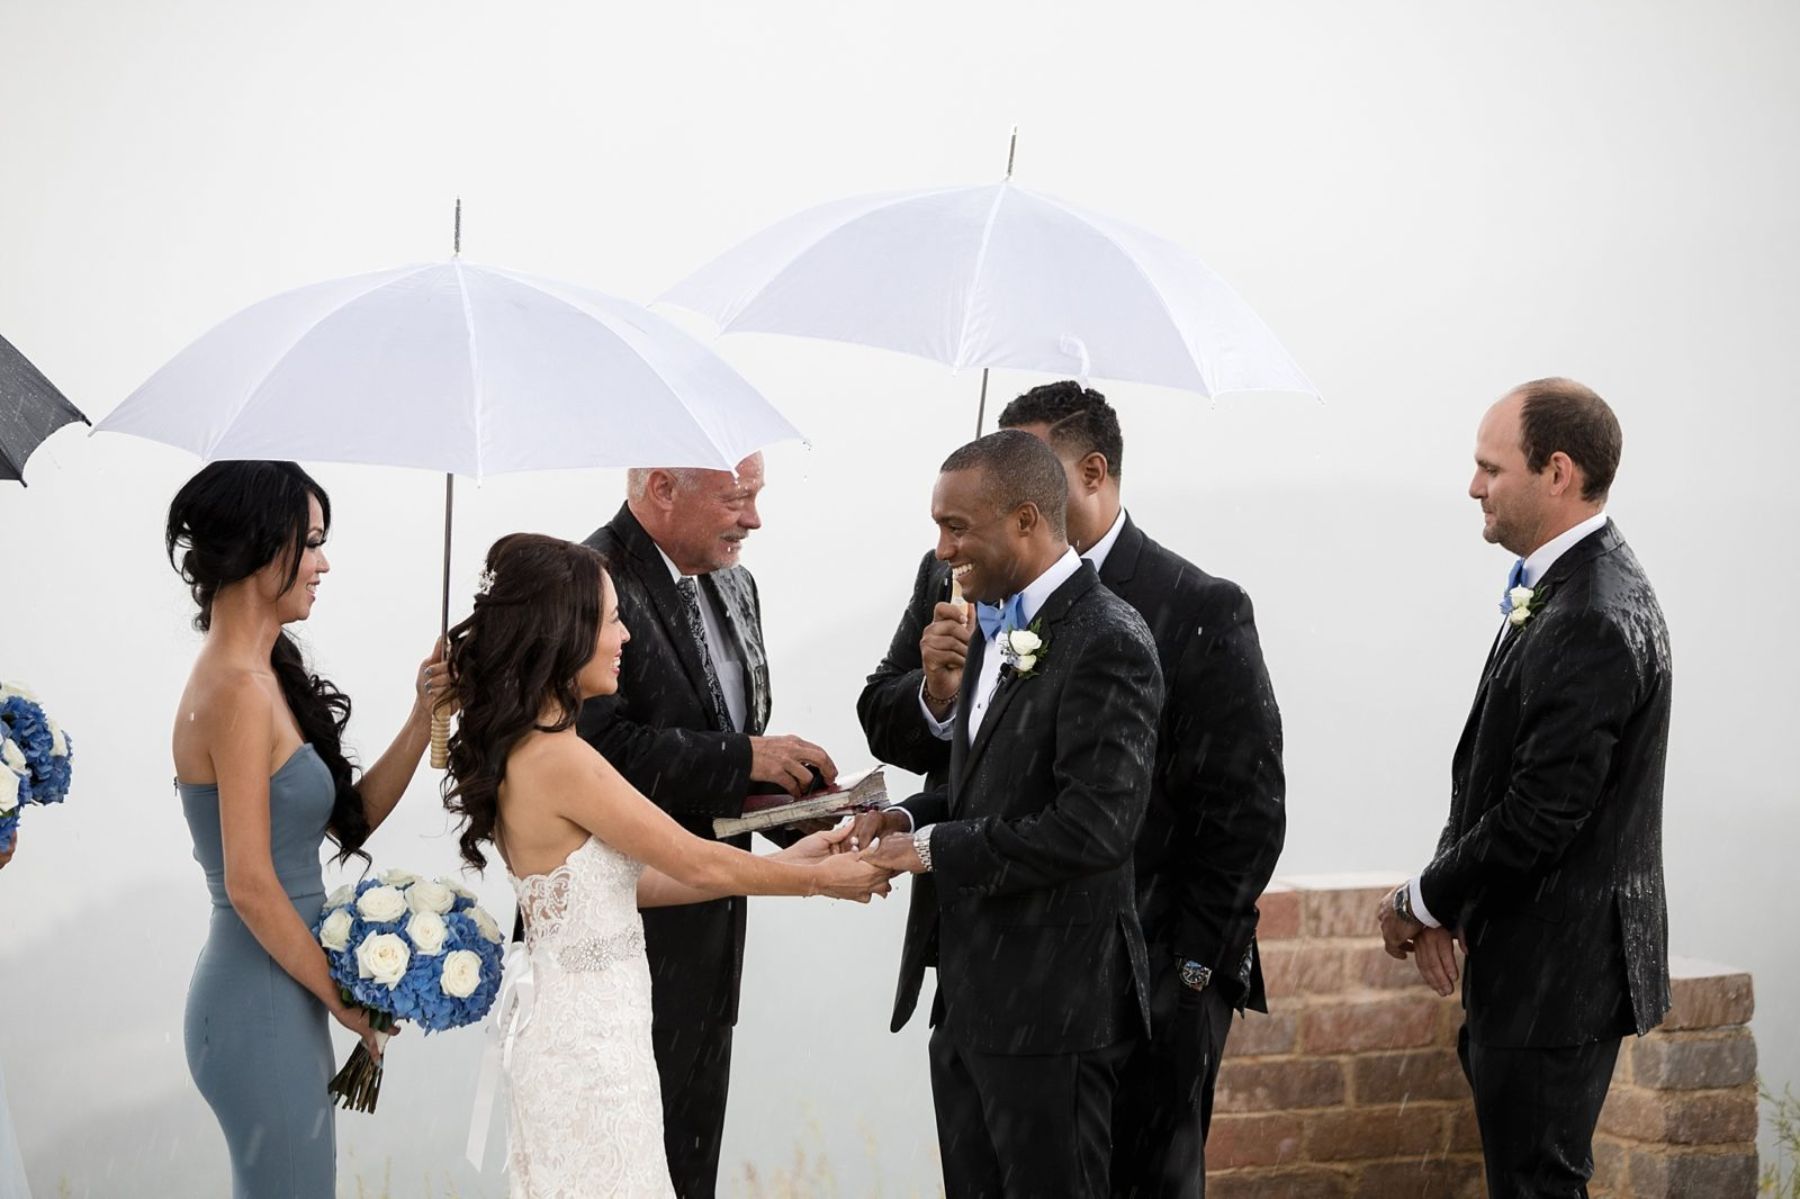 Wedding ceremony in the rain